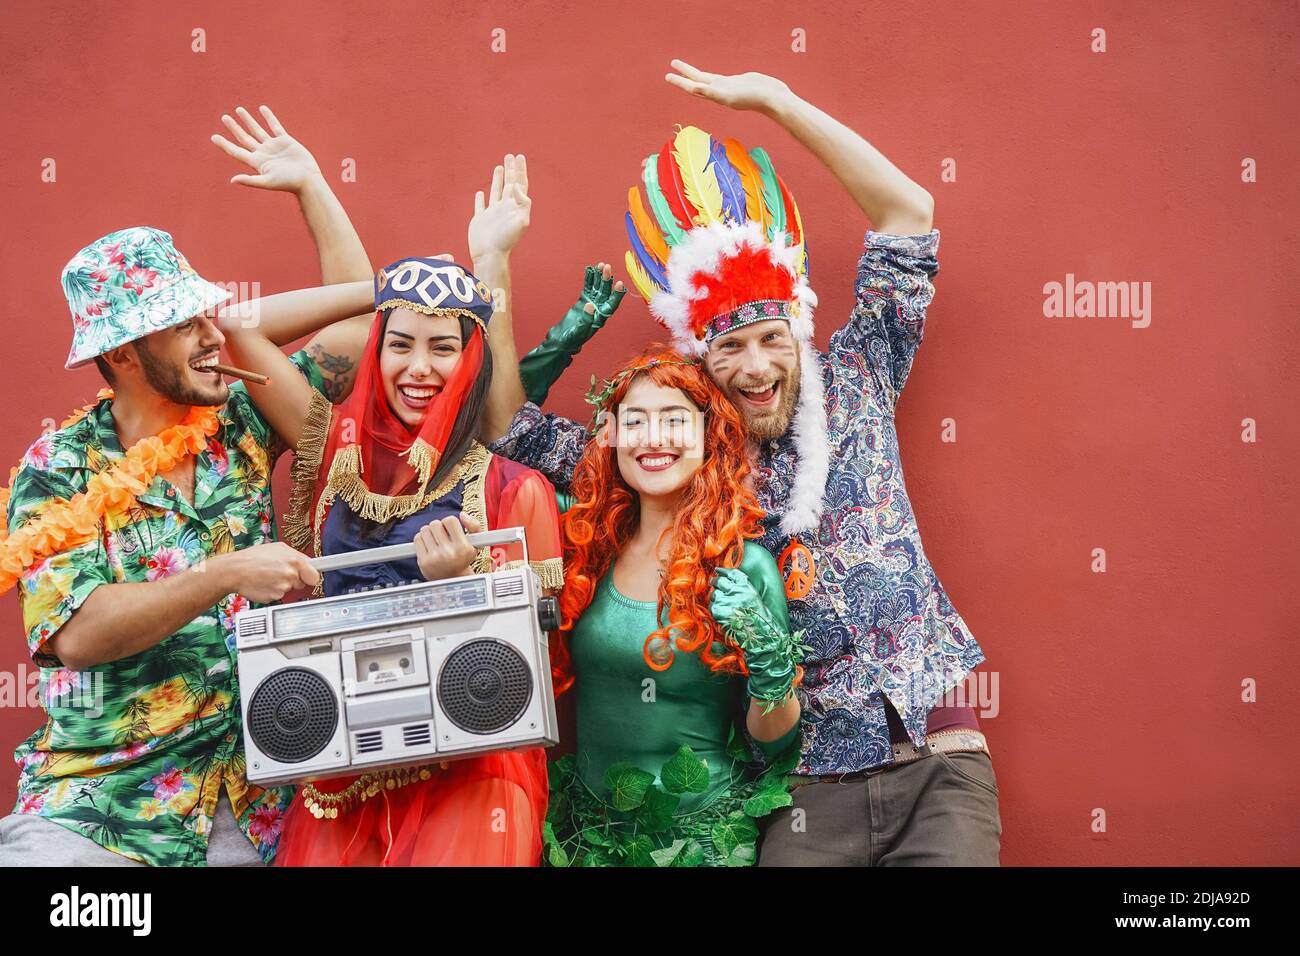 Heureux amis célébrant la fête du carnaval en plein air - jeunes fous ayant des costumes de fantaisie écoutant de la musique avec la chaîne stéréo vintage boombox Banque D'Images